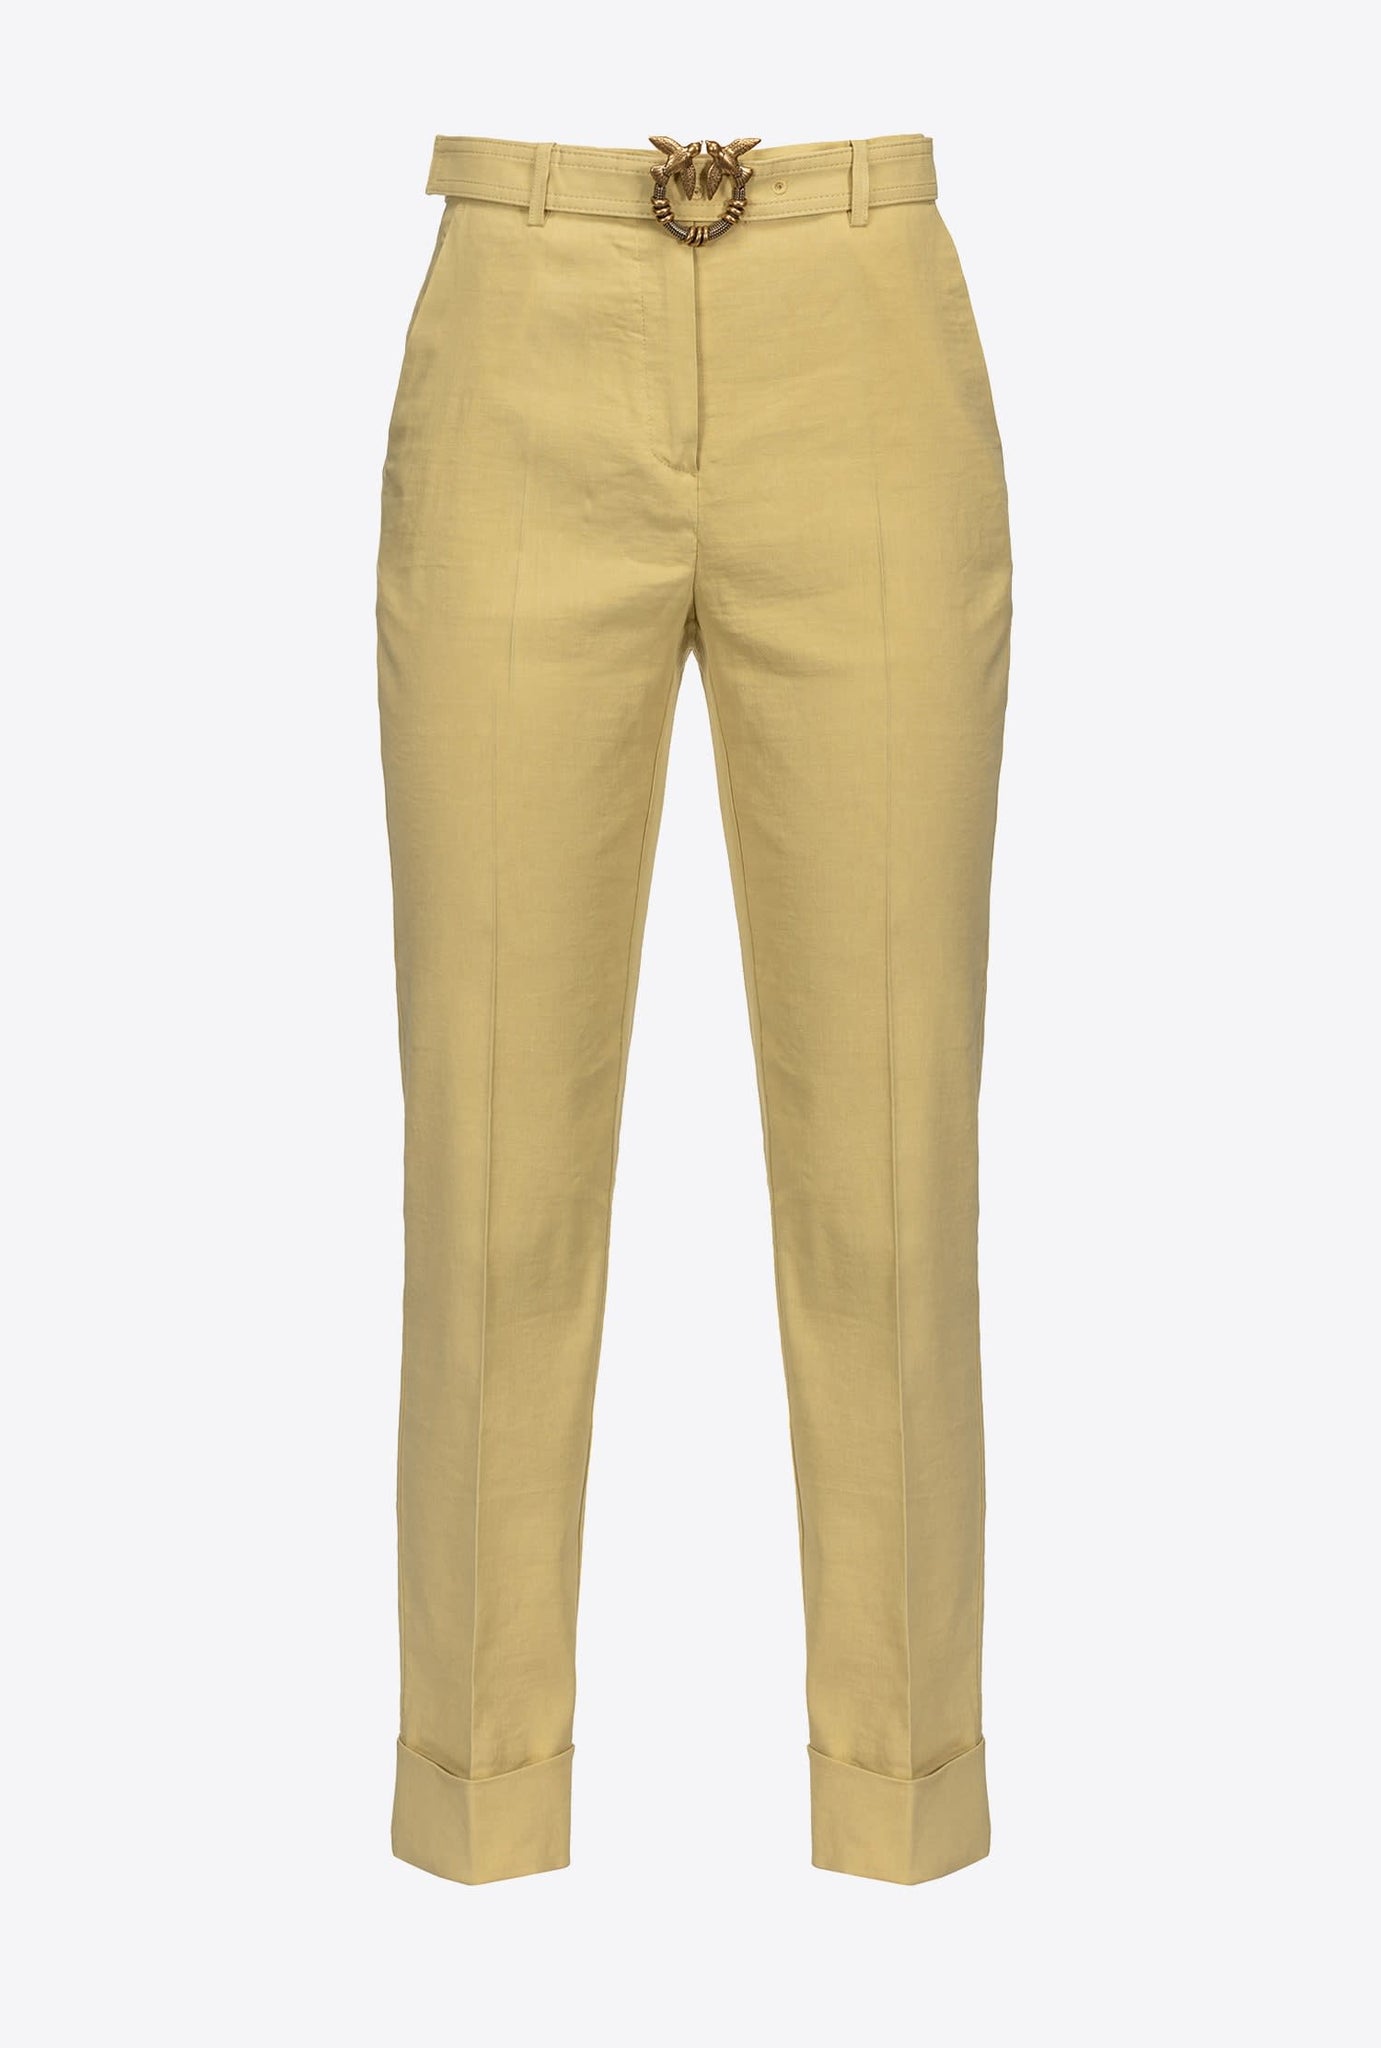 Pantalone Pinko con Cintura / Giallo - Ideal Moda